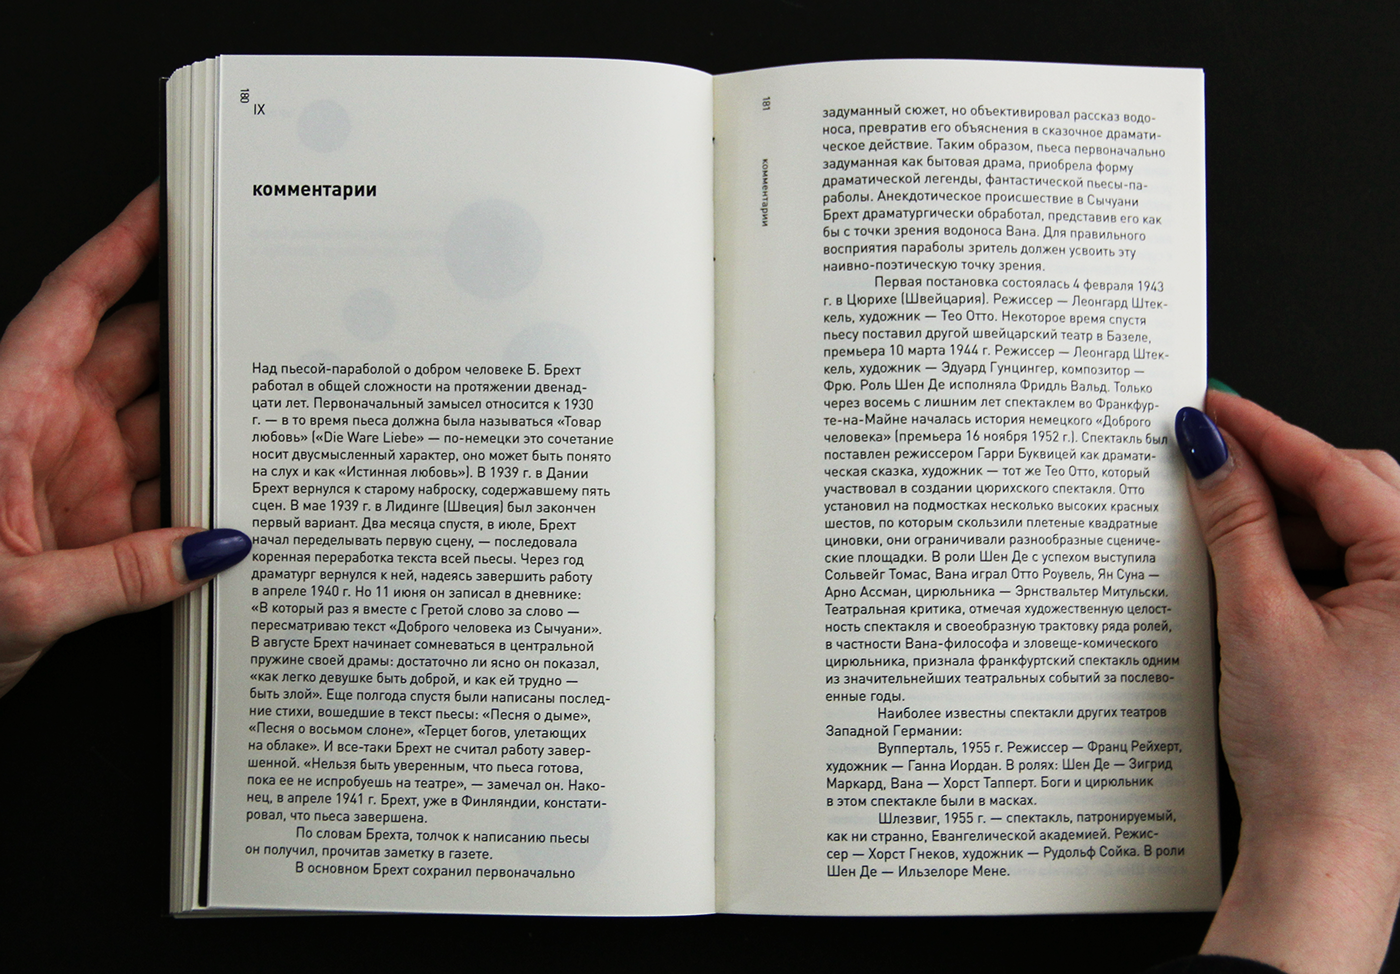 Bertolt Brecht book graphic design  brecht editorial design 